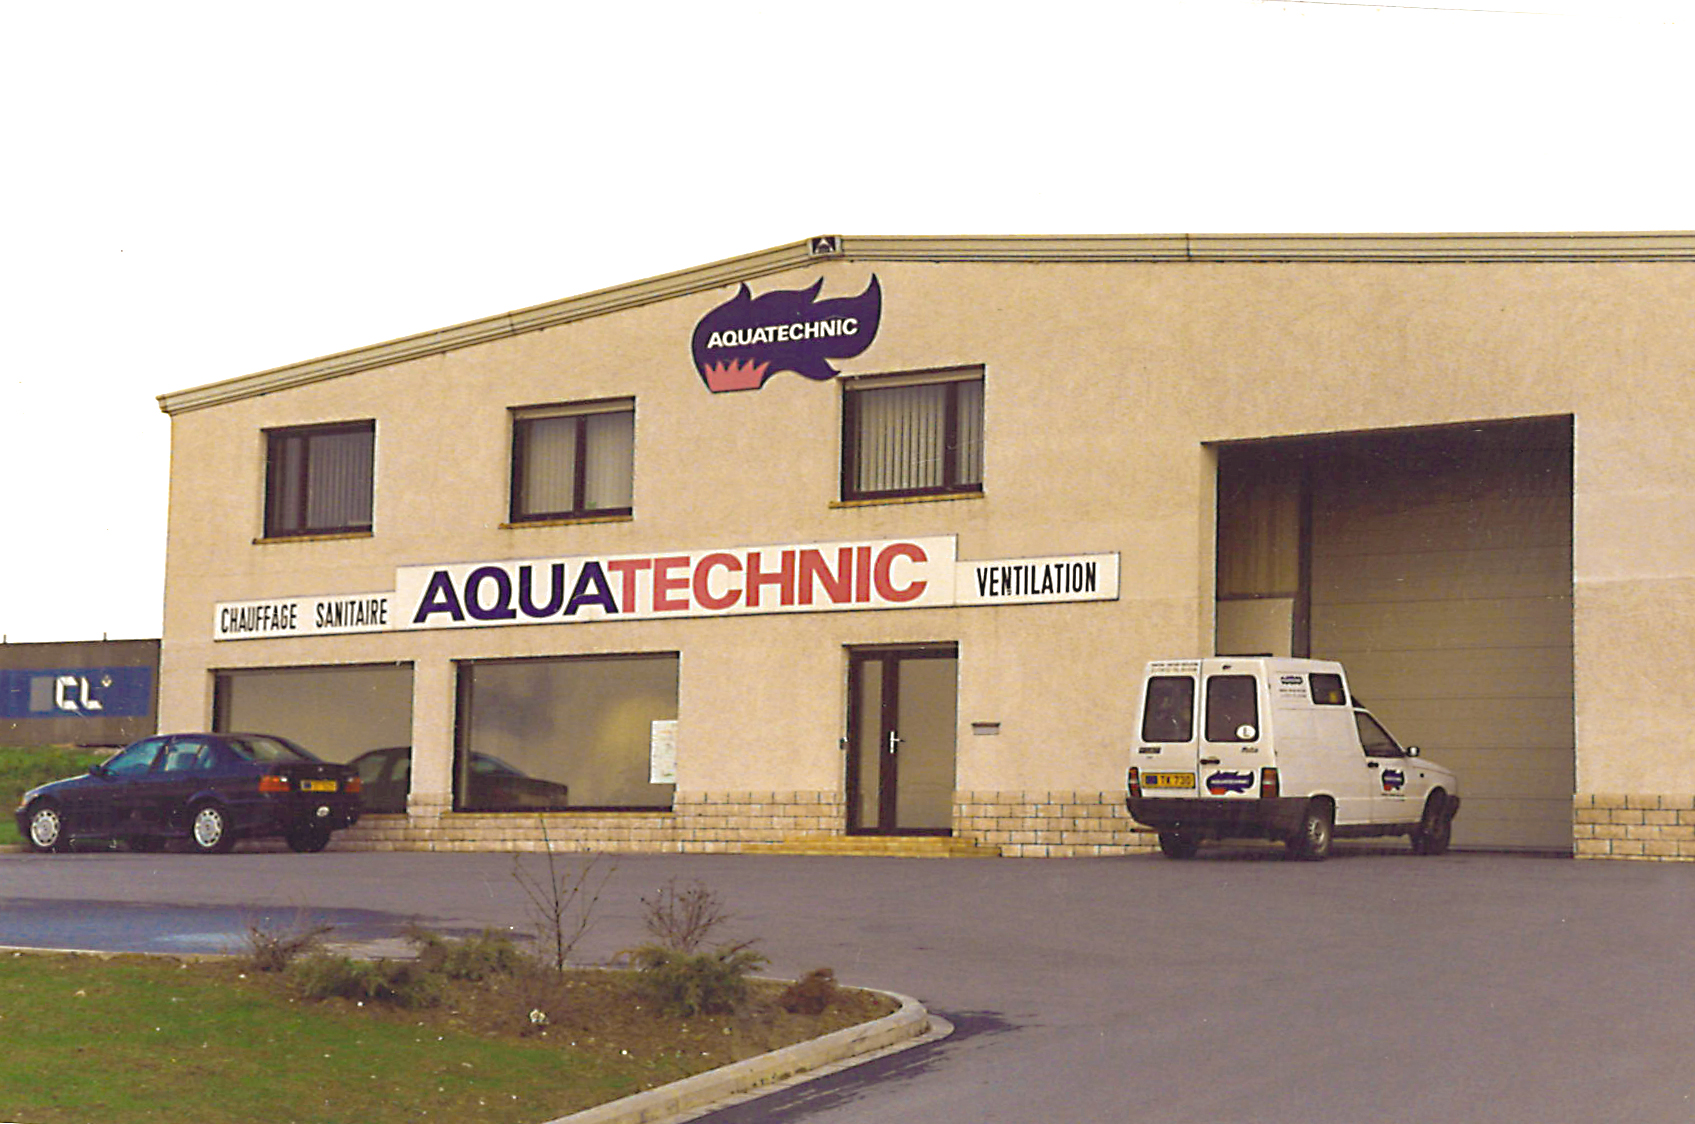 Aquatechnic